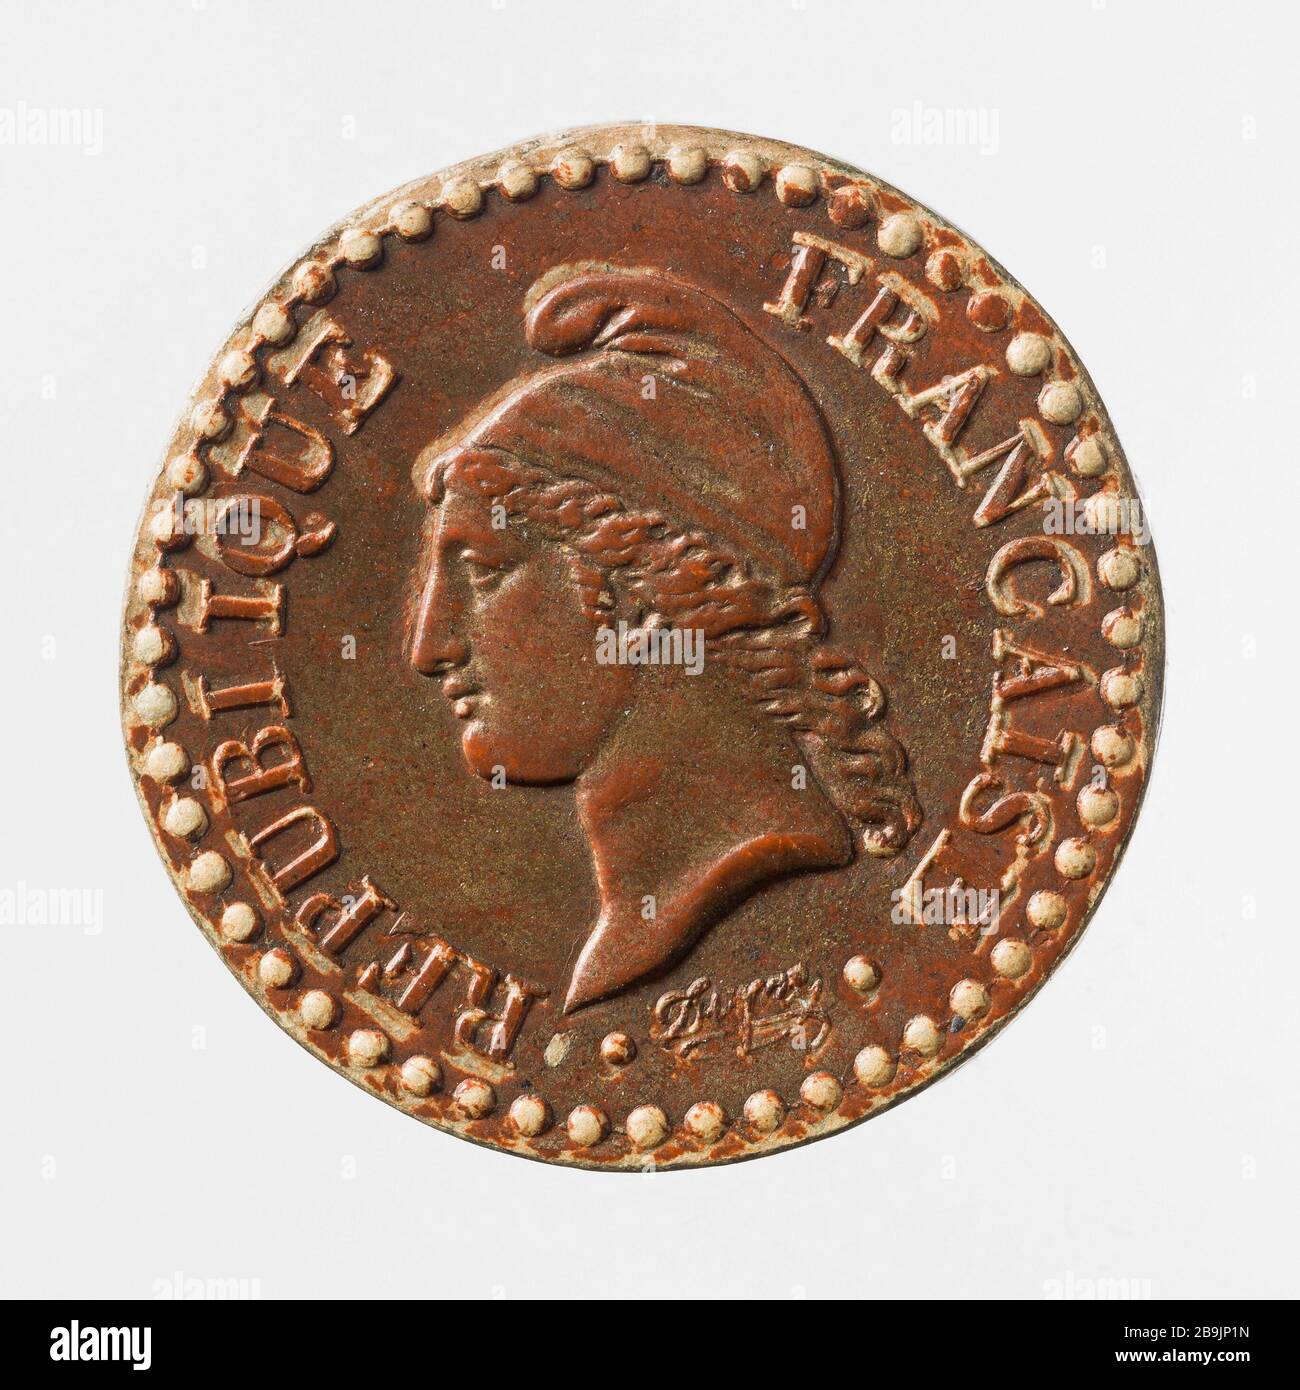 Part of a penny of the Second Republic, 1849 Augustin Dupré (1748-1833). Pièce de un centime de la Deuxième République, 1849. Matériaux non identifié. 1849. Paris, musée Carnavalet. Stock Photo